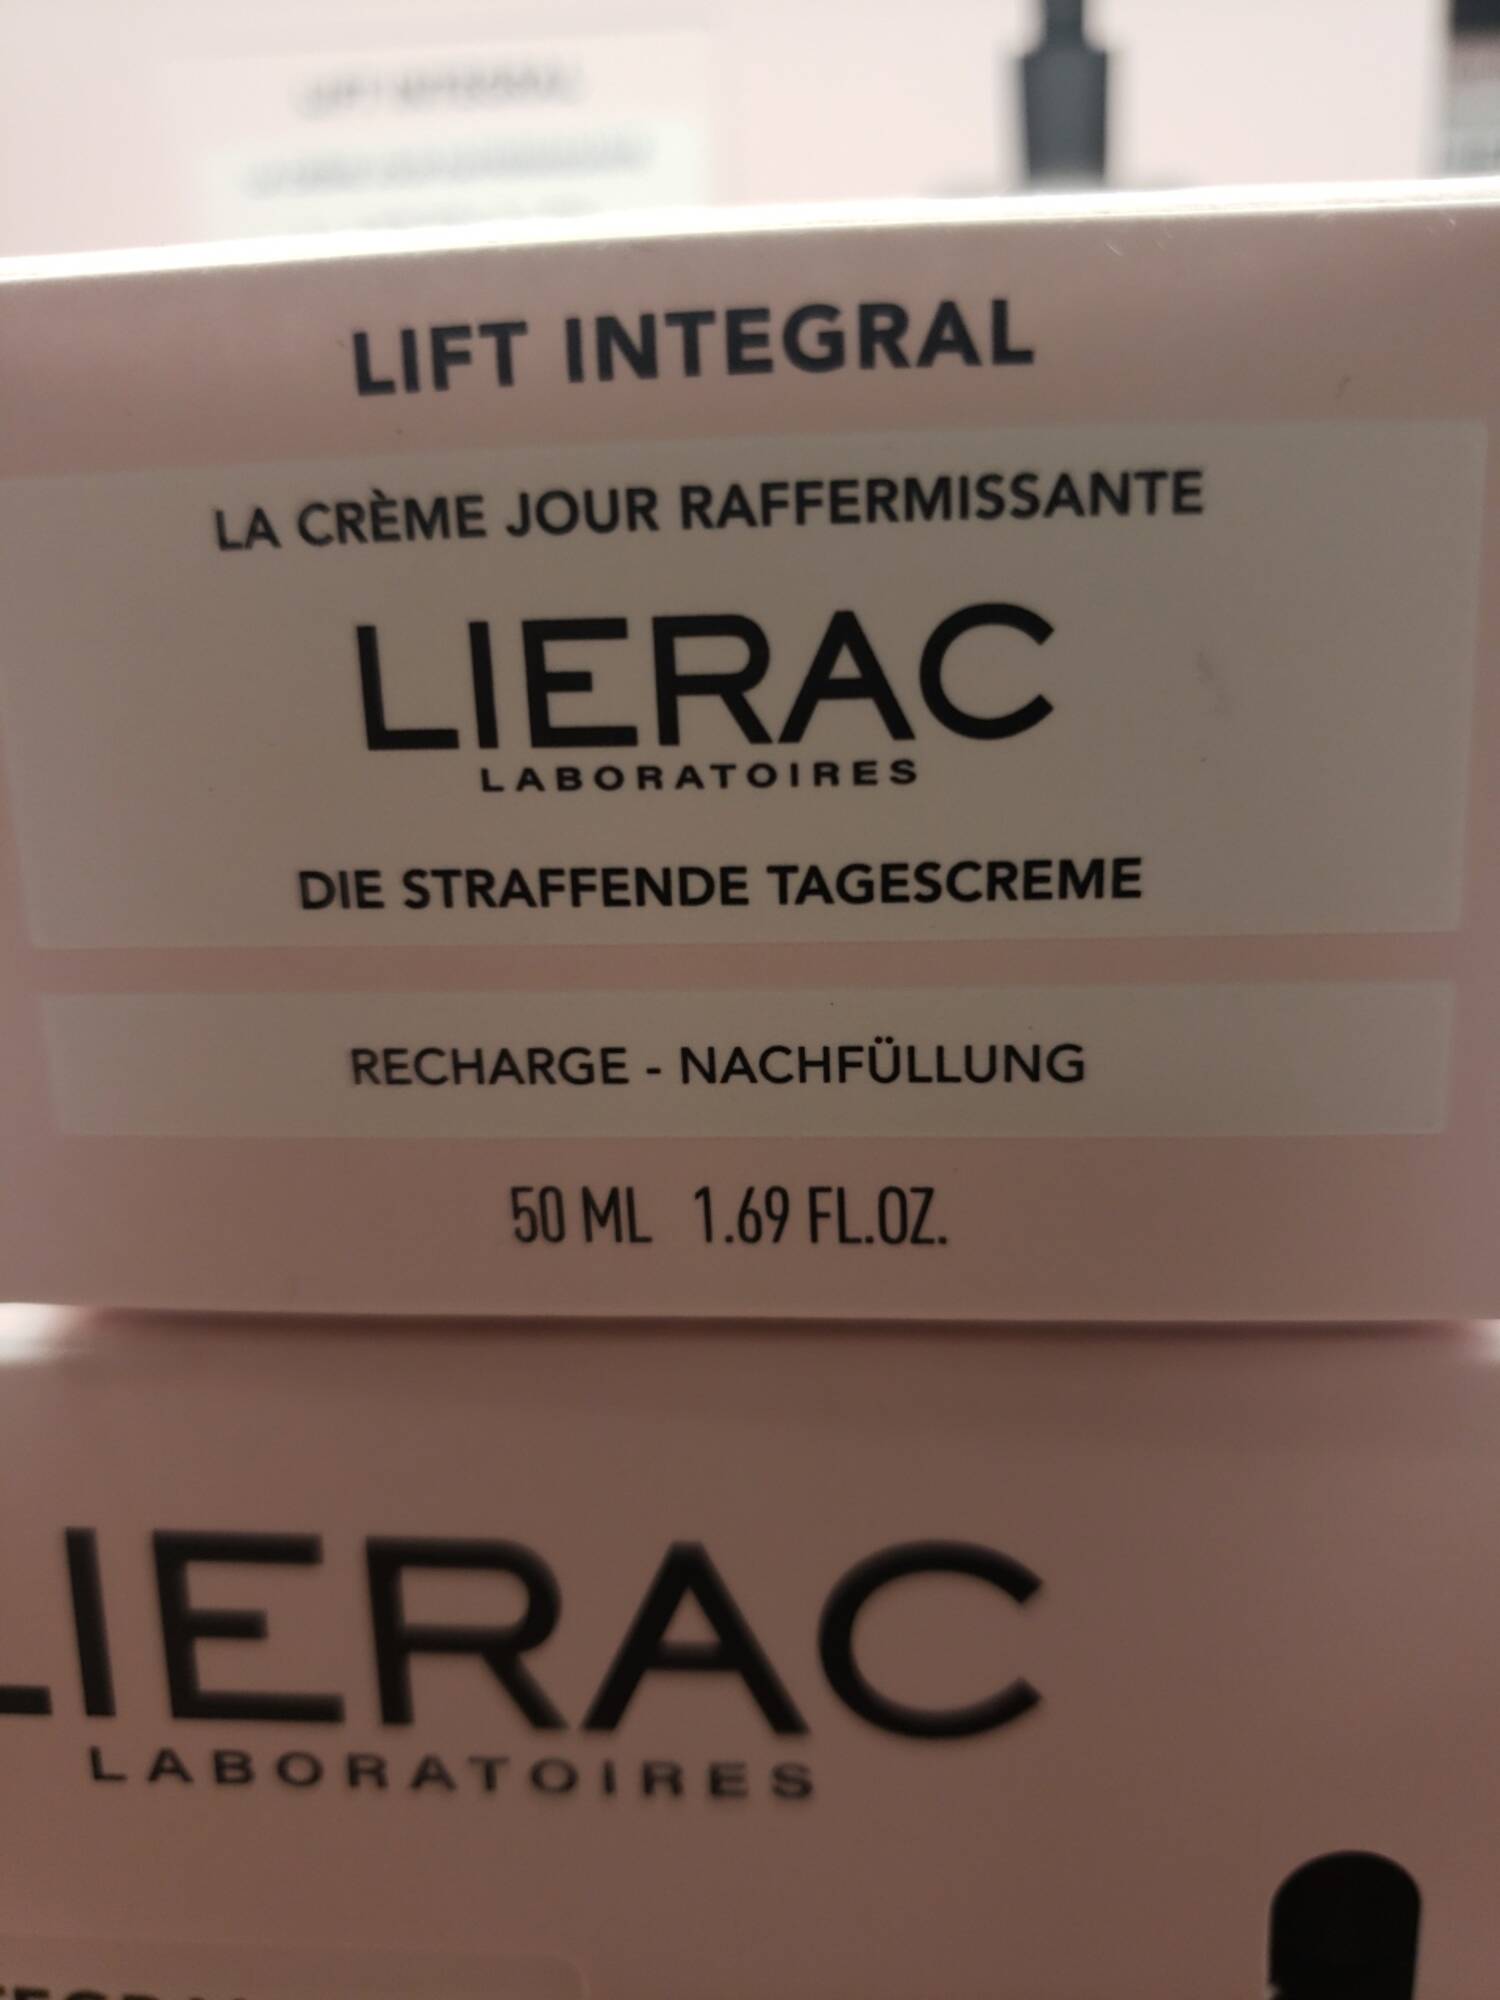 LIÉRAC - Lift integral - Crème de jour raffermissante